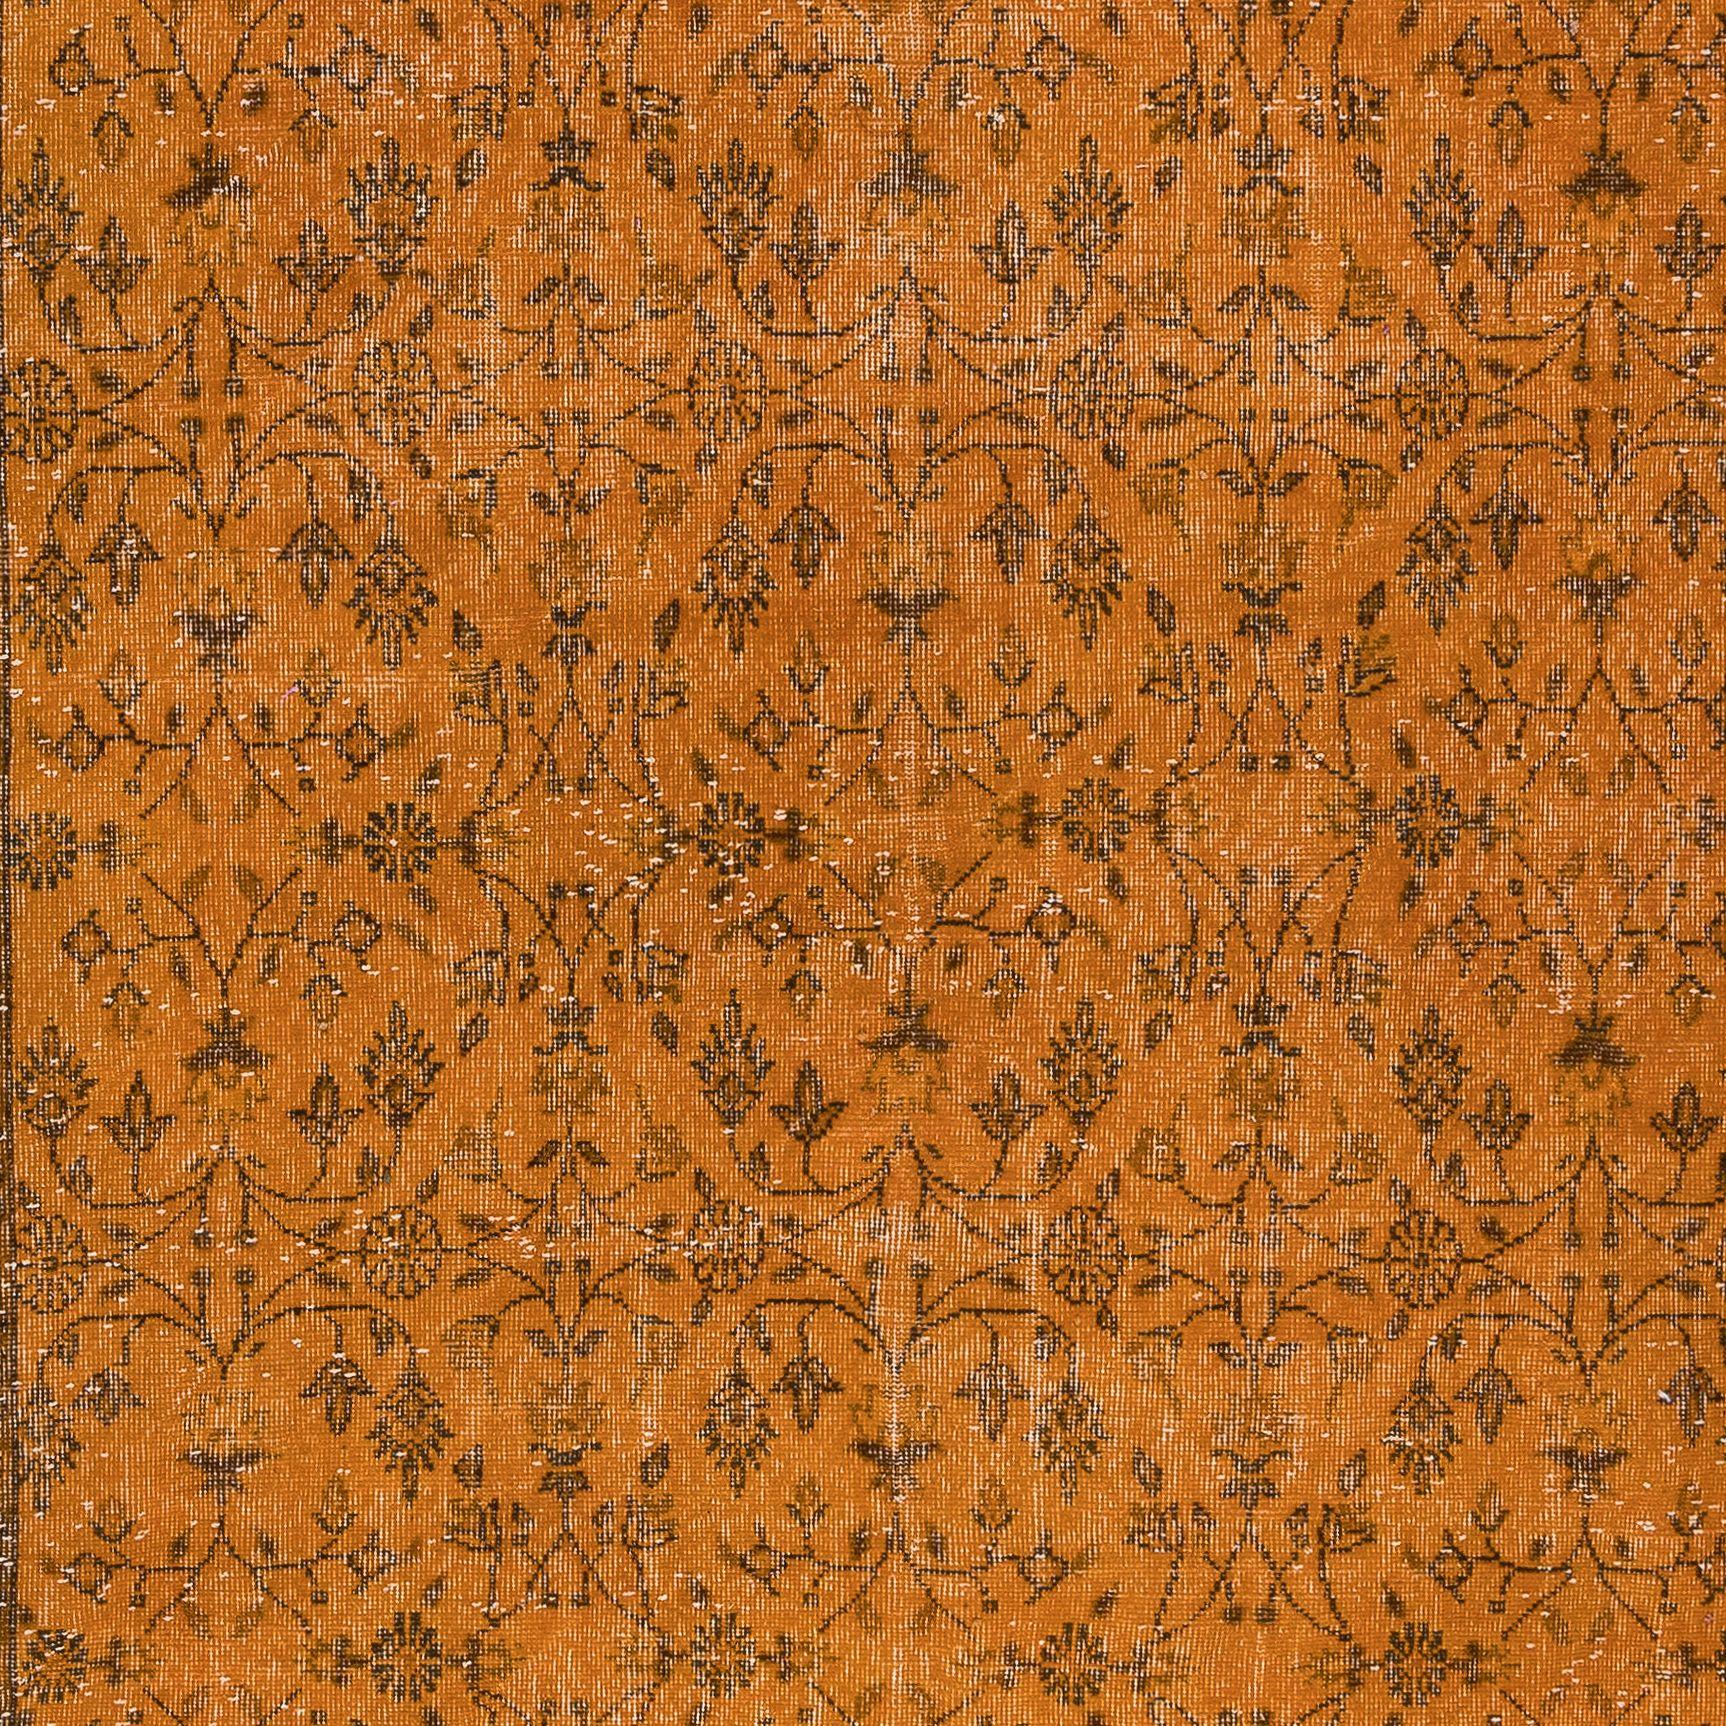 Modern 6.7x10.5 Ft Handmade Rug with All-Over Botanical Design, Orange Turkish Carpet For Sale